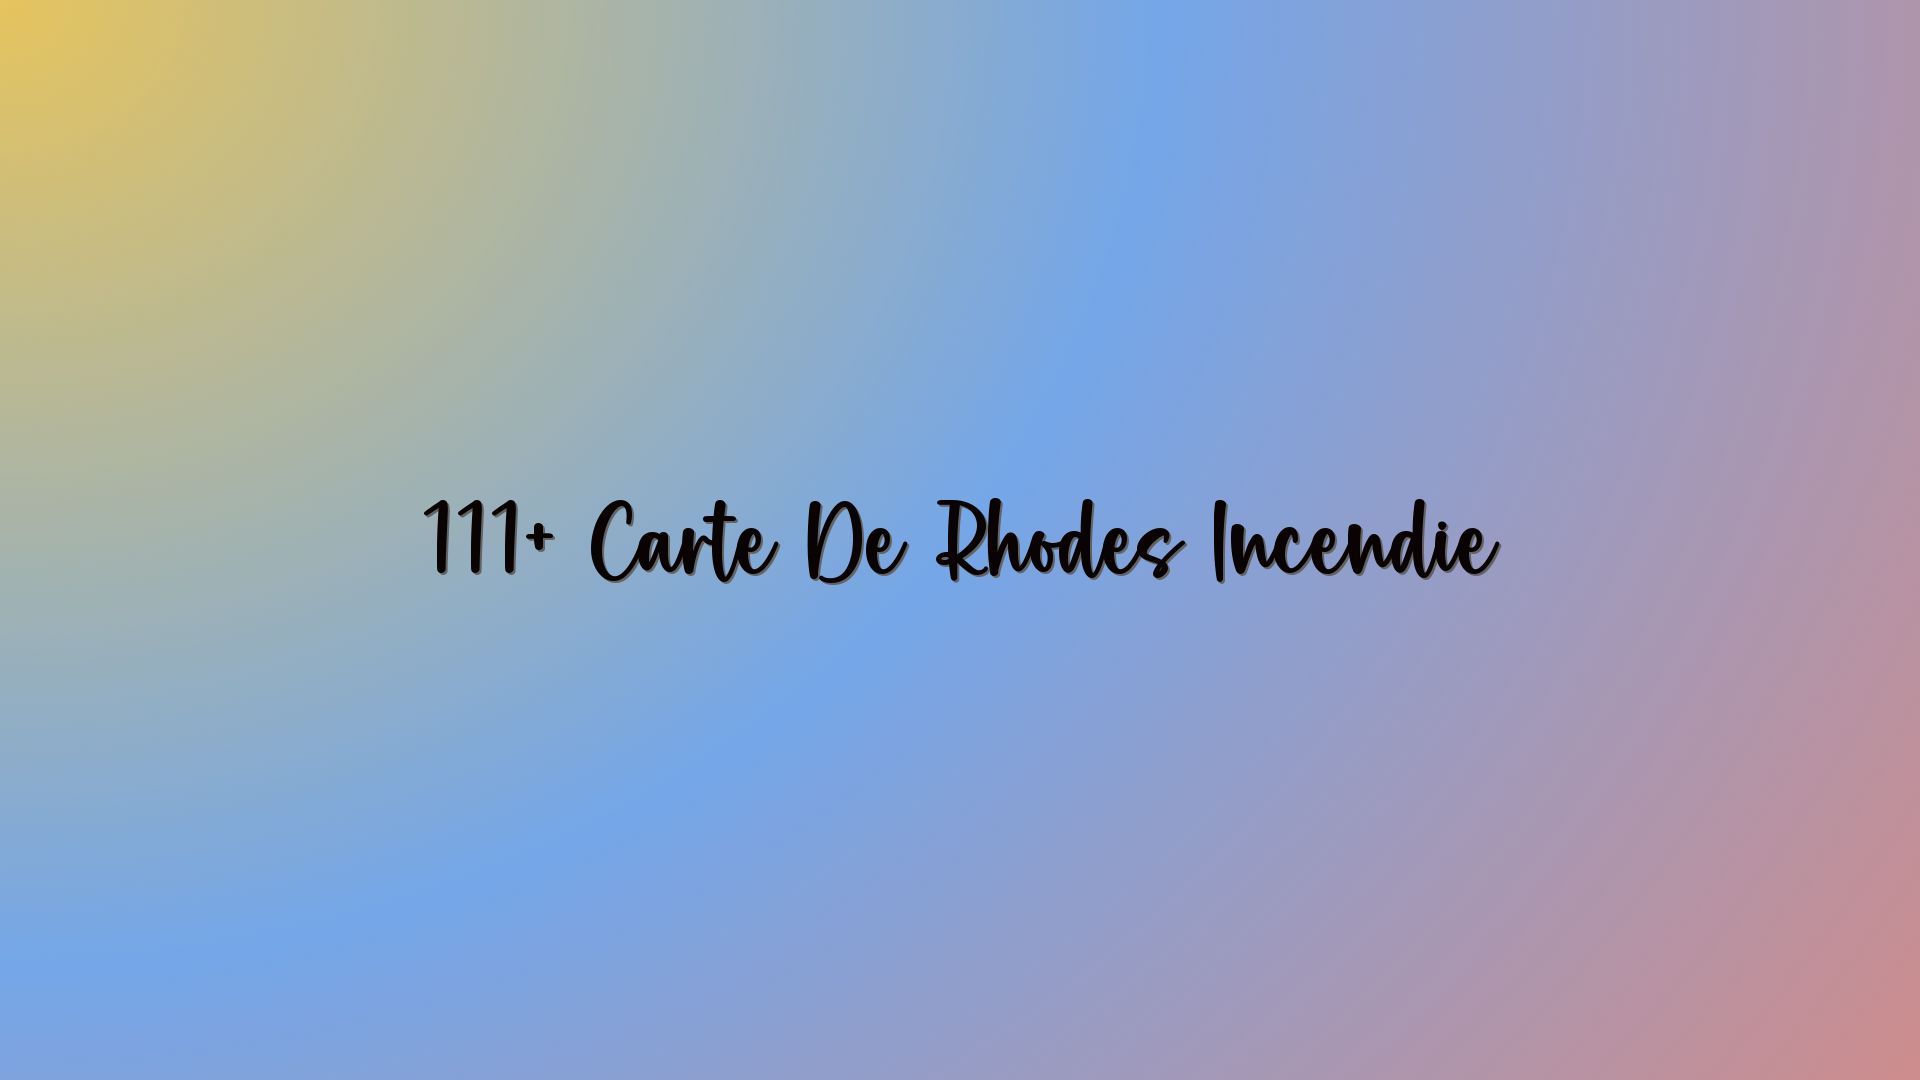 111+ Carte De Rhodes Incendie